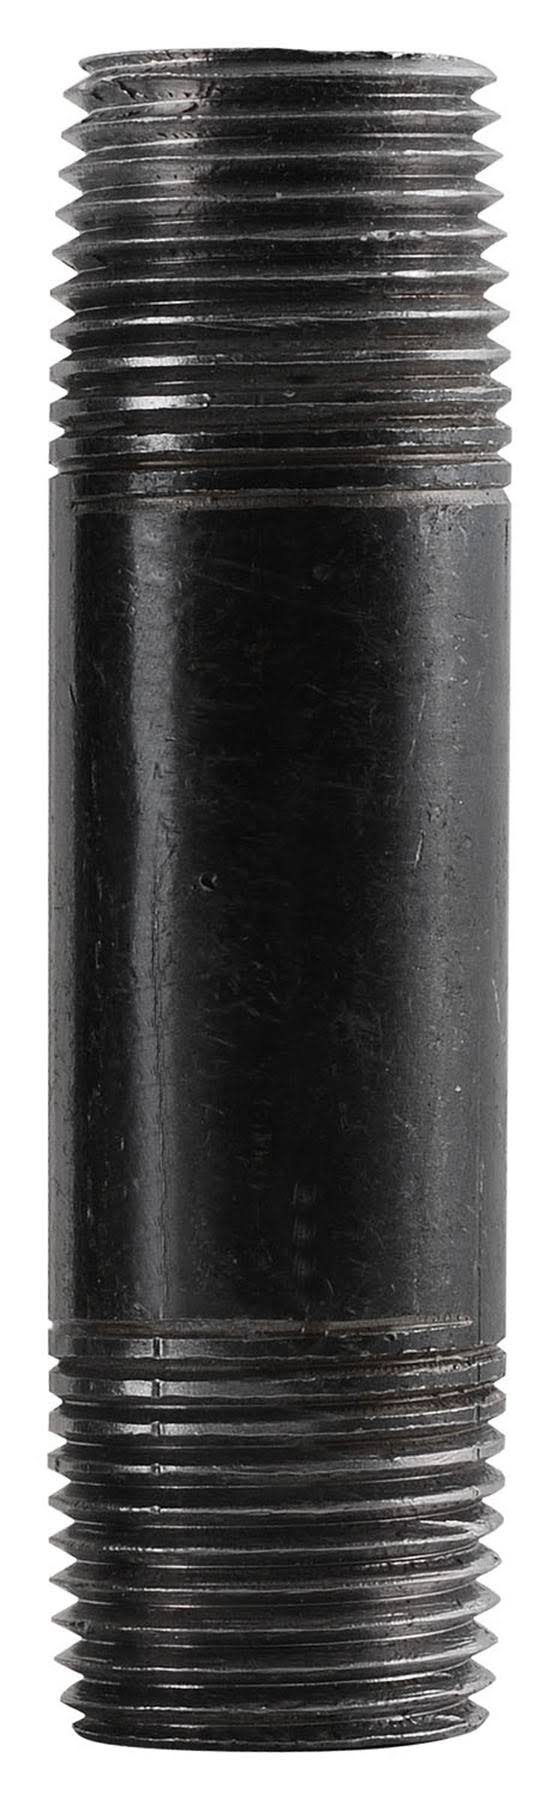 LDR Steel Pipe Nipple - Black, 3/8" x 2 1/2"